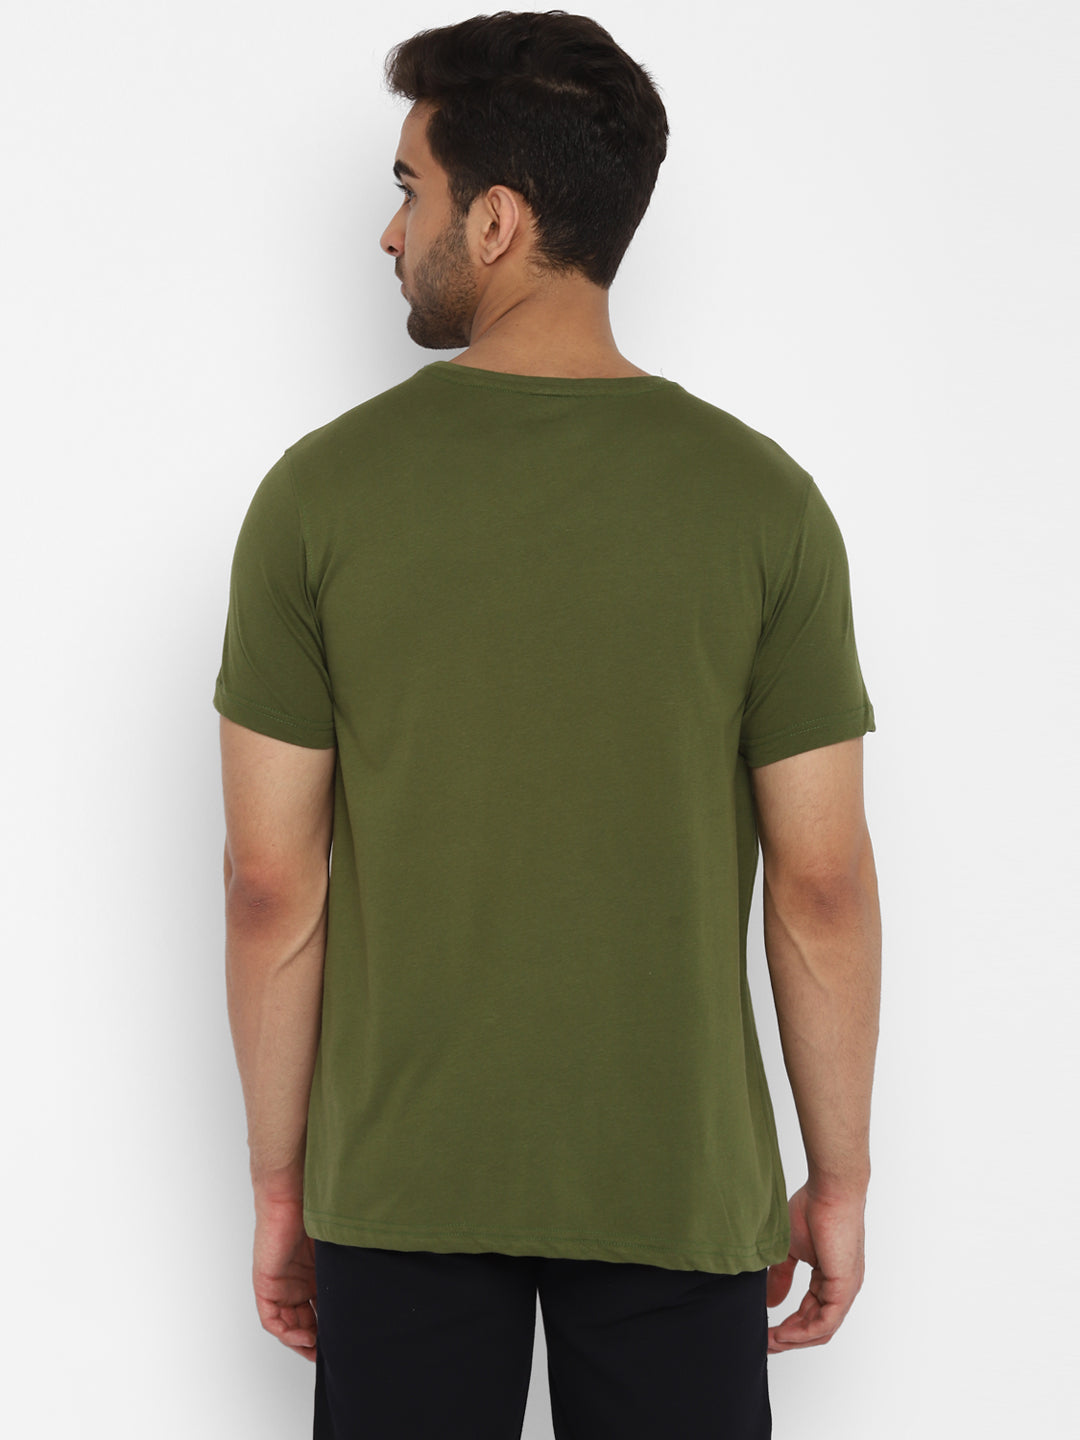 Essentials Olive Printed Round Neck T-Shirt